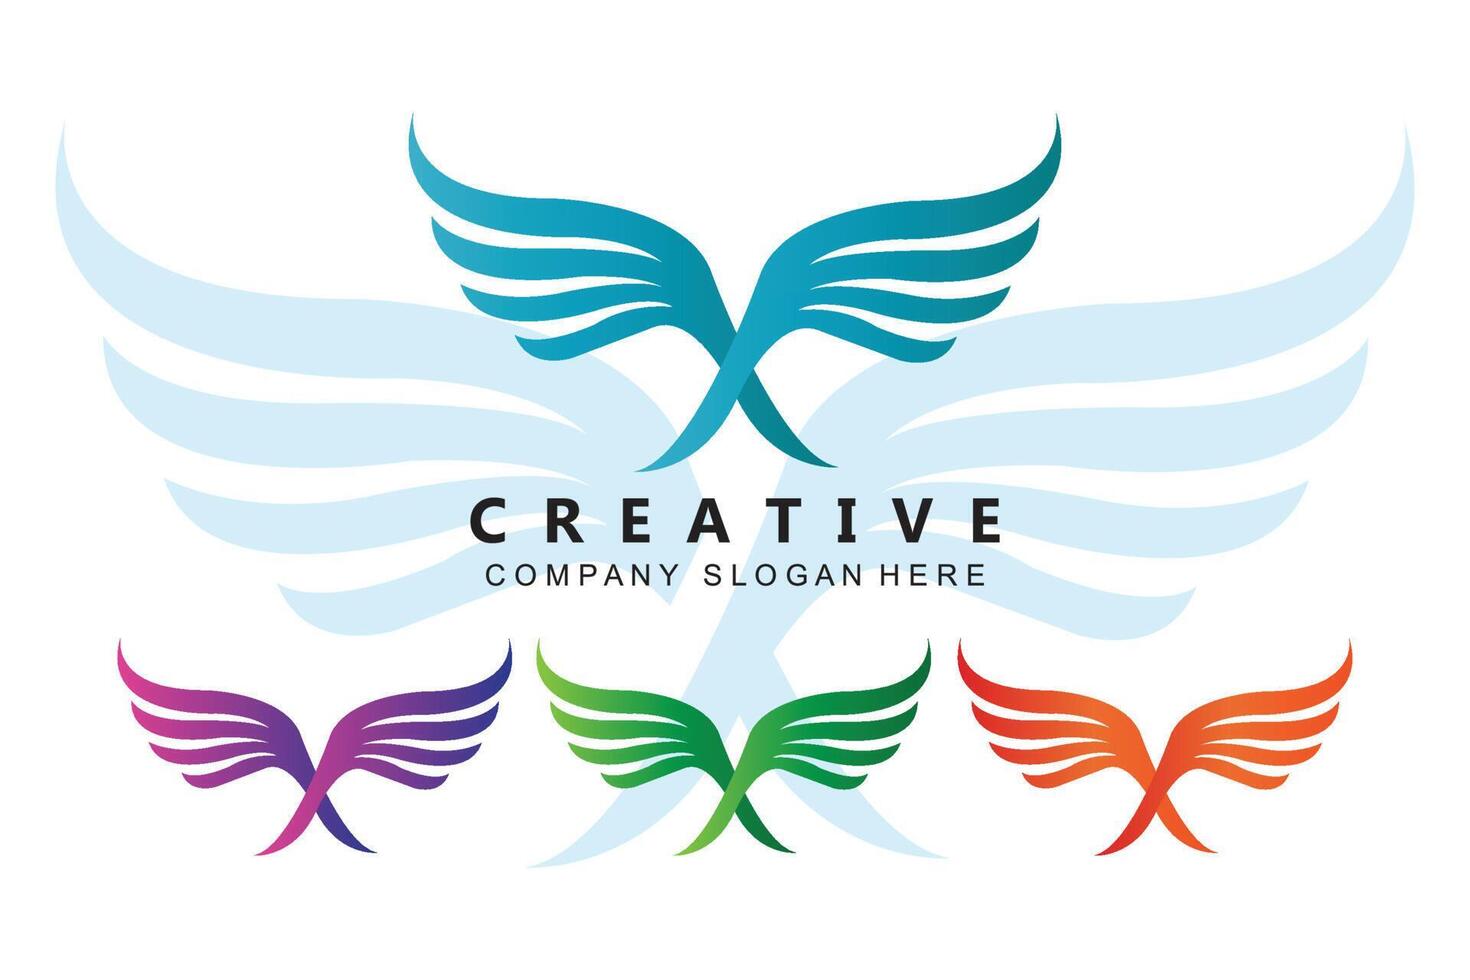 adelaarsvleugel logo-ontwerp, vliegende vogel dierenillustratie, bedrijfsmerk vector